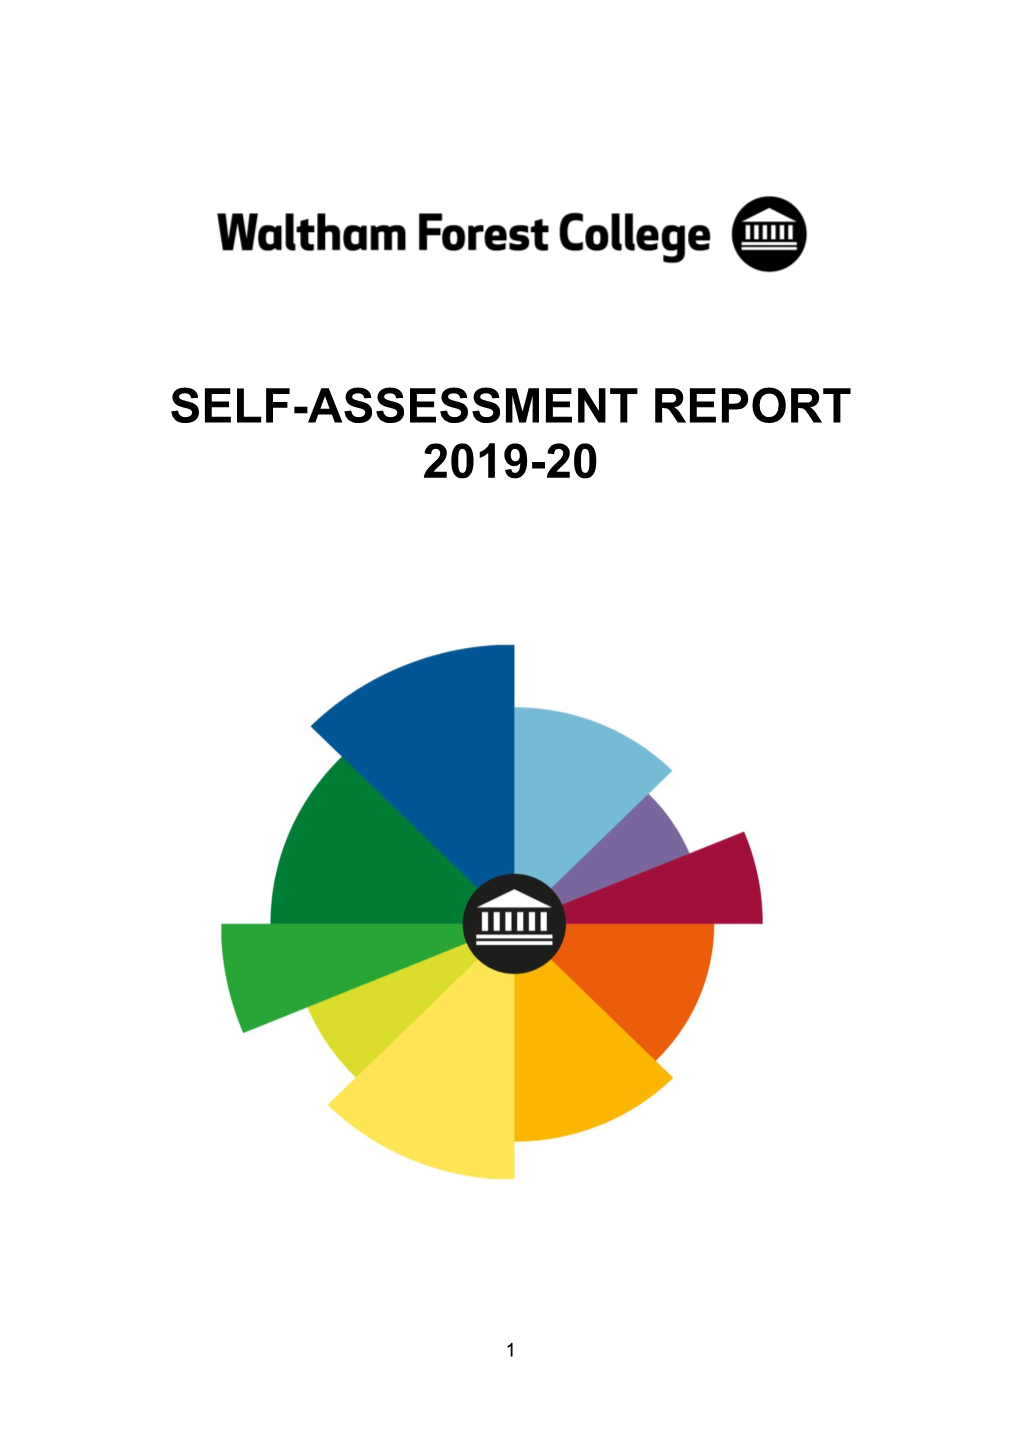 Self-Assessment Report 2019-20